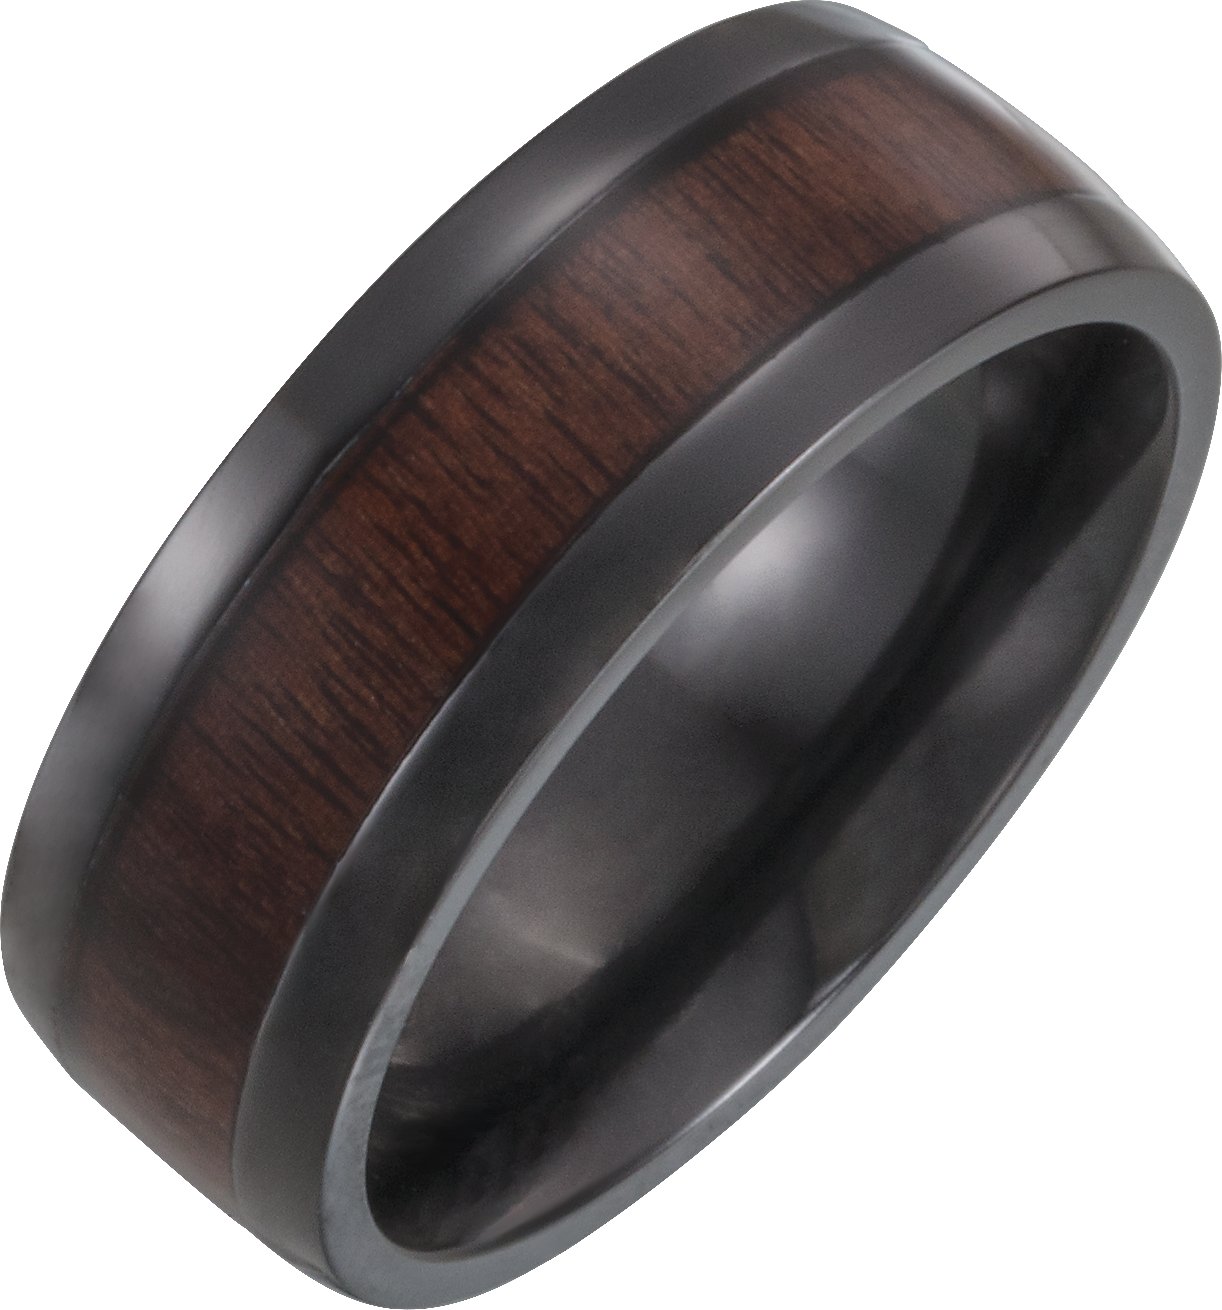 Black Titanium 8 mm Beveled-Edge Band with Wood Inlay Size 7.5